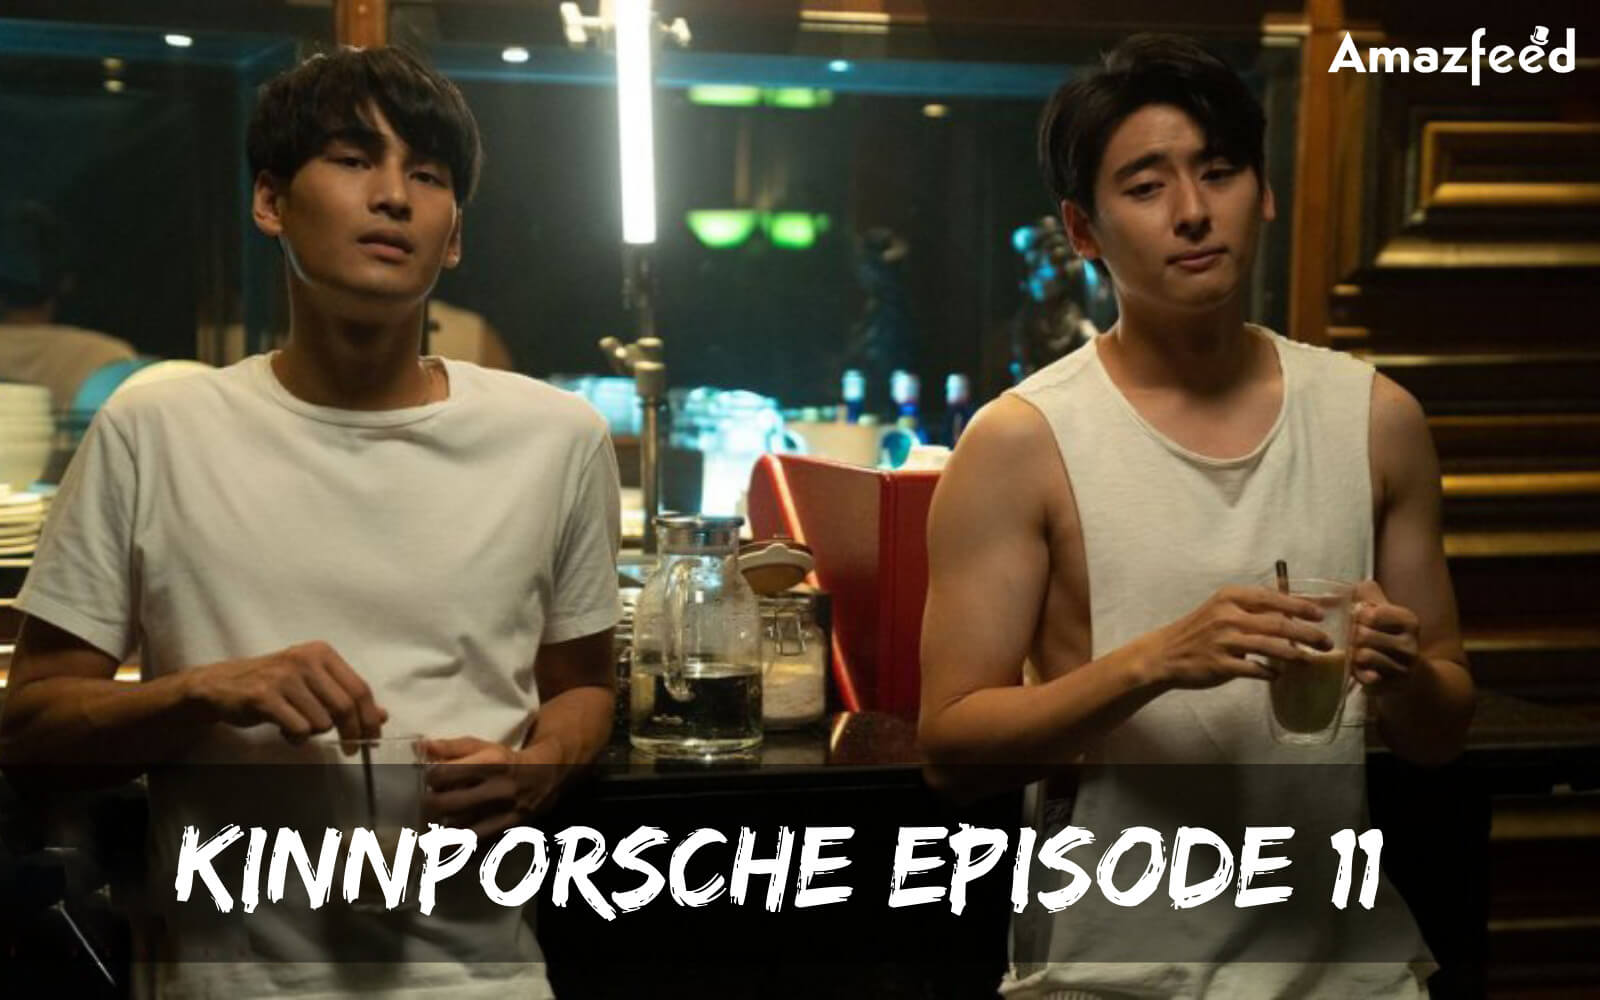 kinnporsche Episode 11 release date